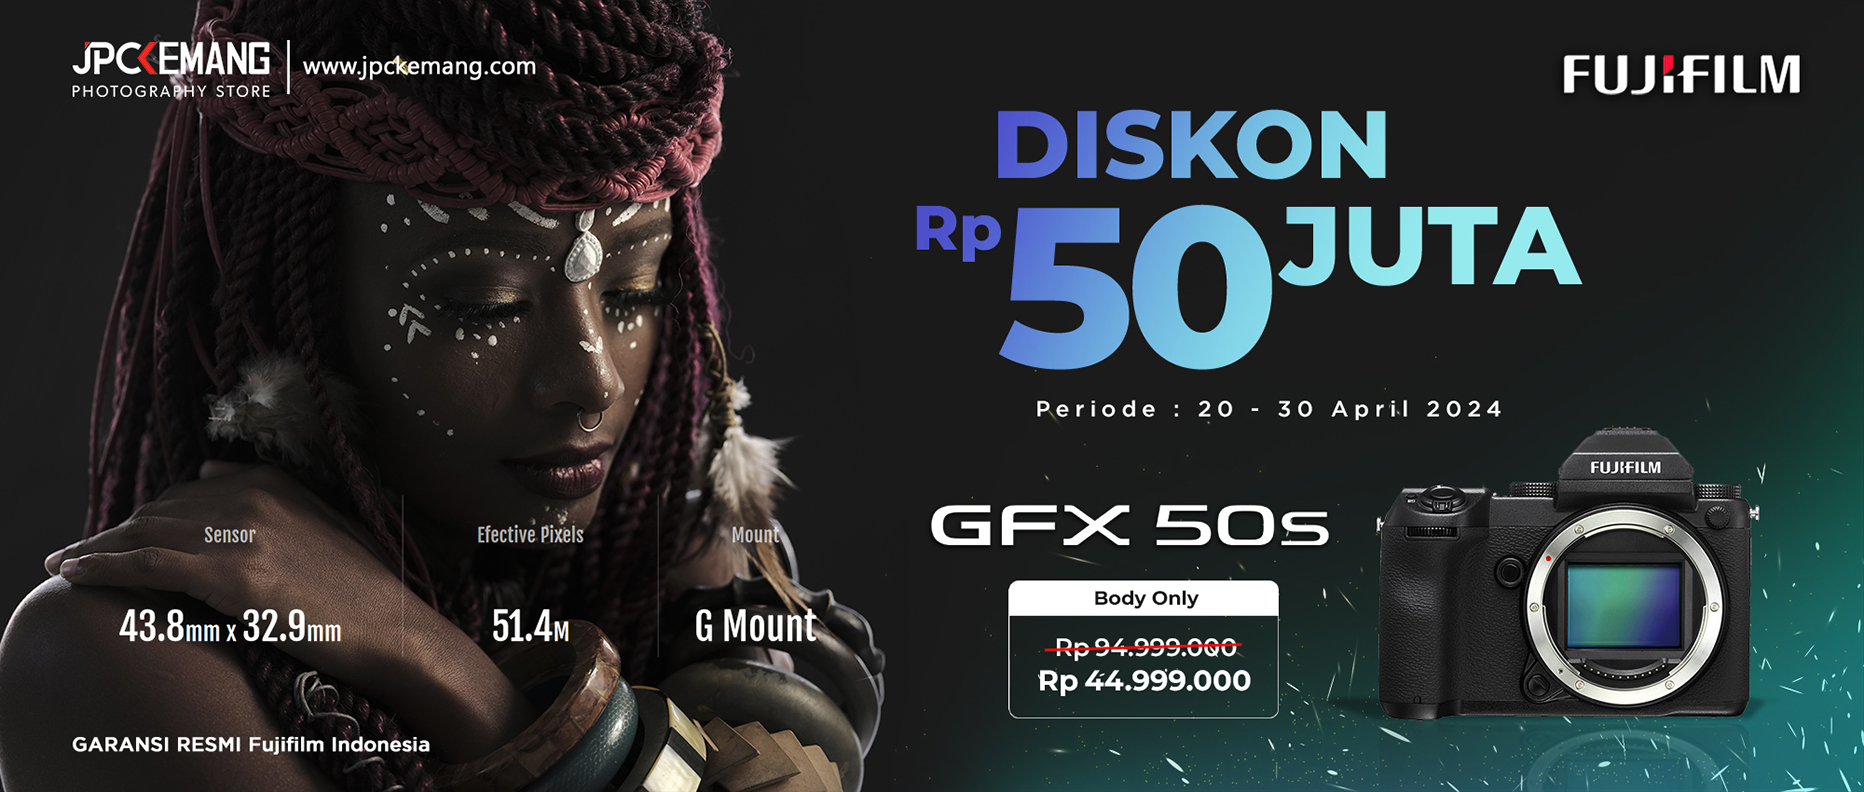 Diskon Fujifilm GFX 50S